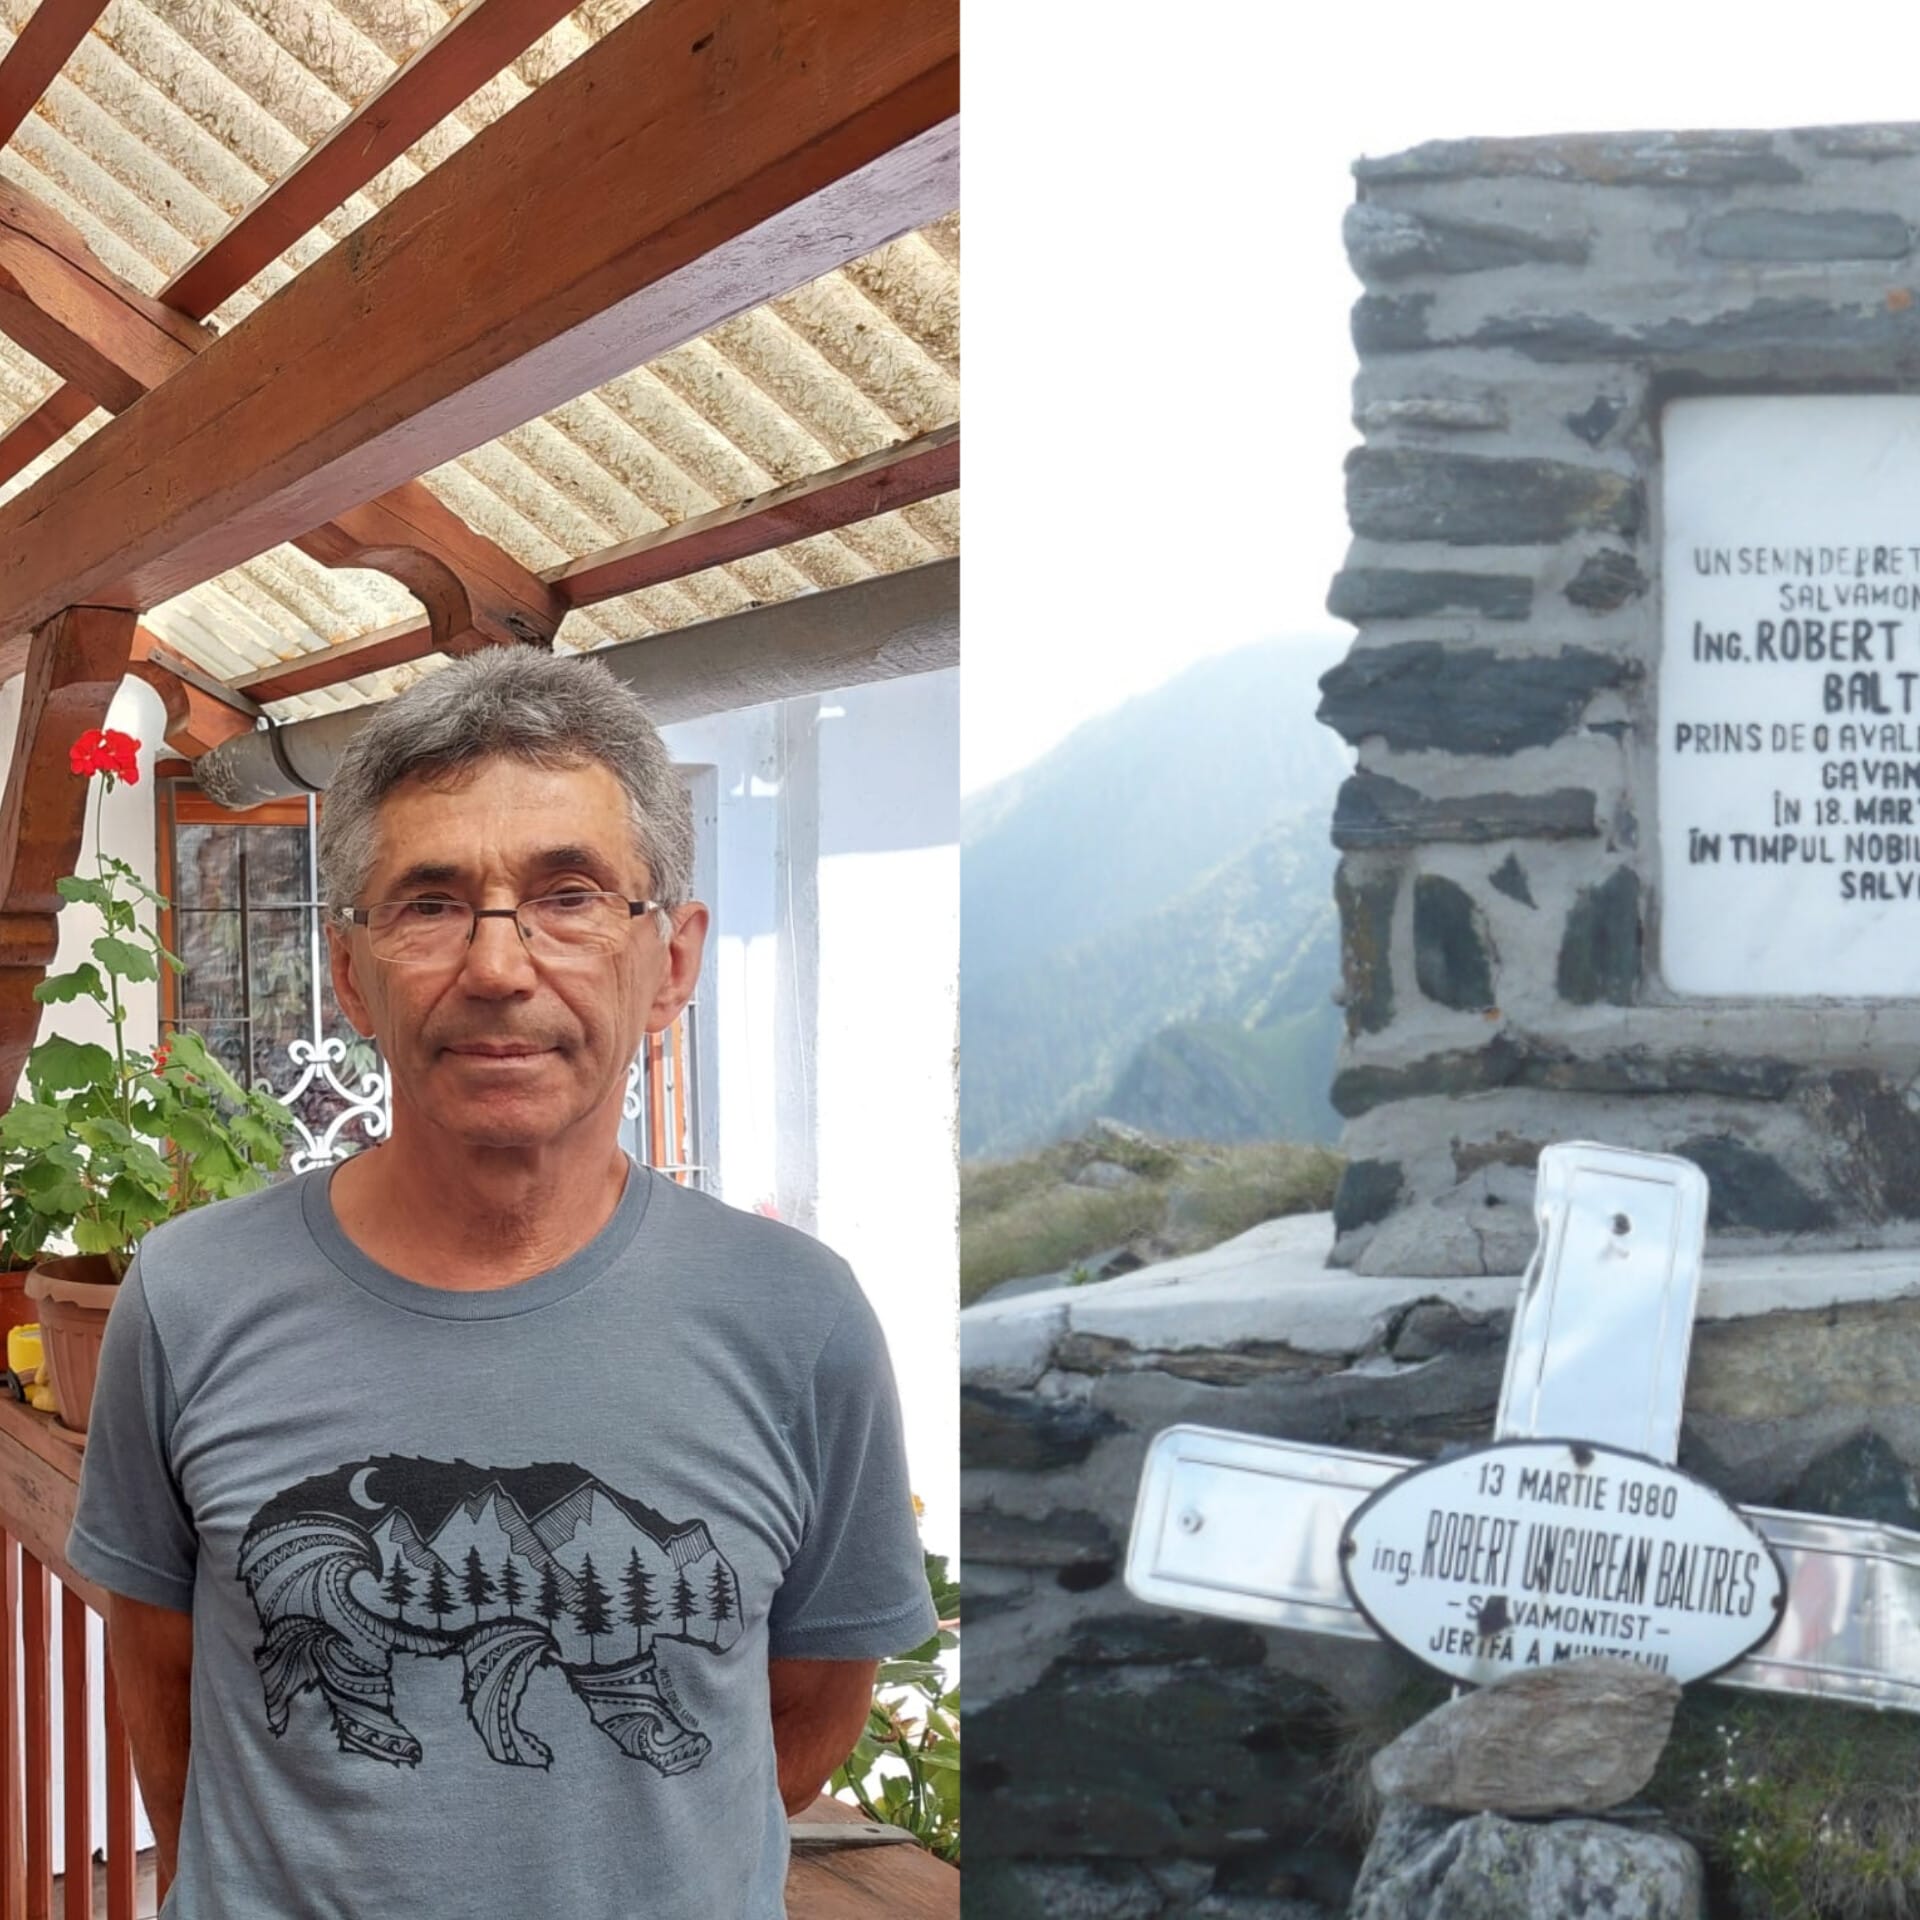 Salvamontistul Mihai Voinescu spune povestea lui Robert Ungurean, mort în misiune pe munte. Un monument amintește de el, la peste 1.700 de metri